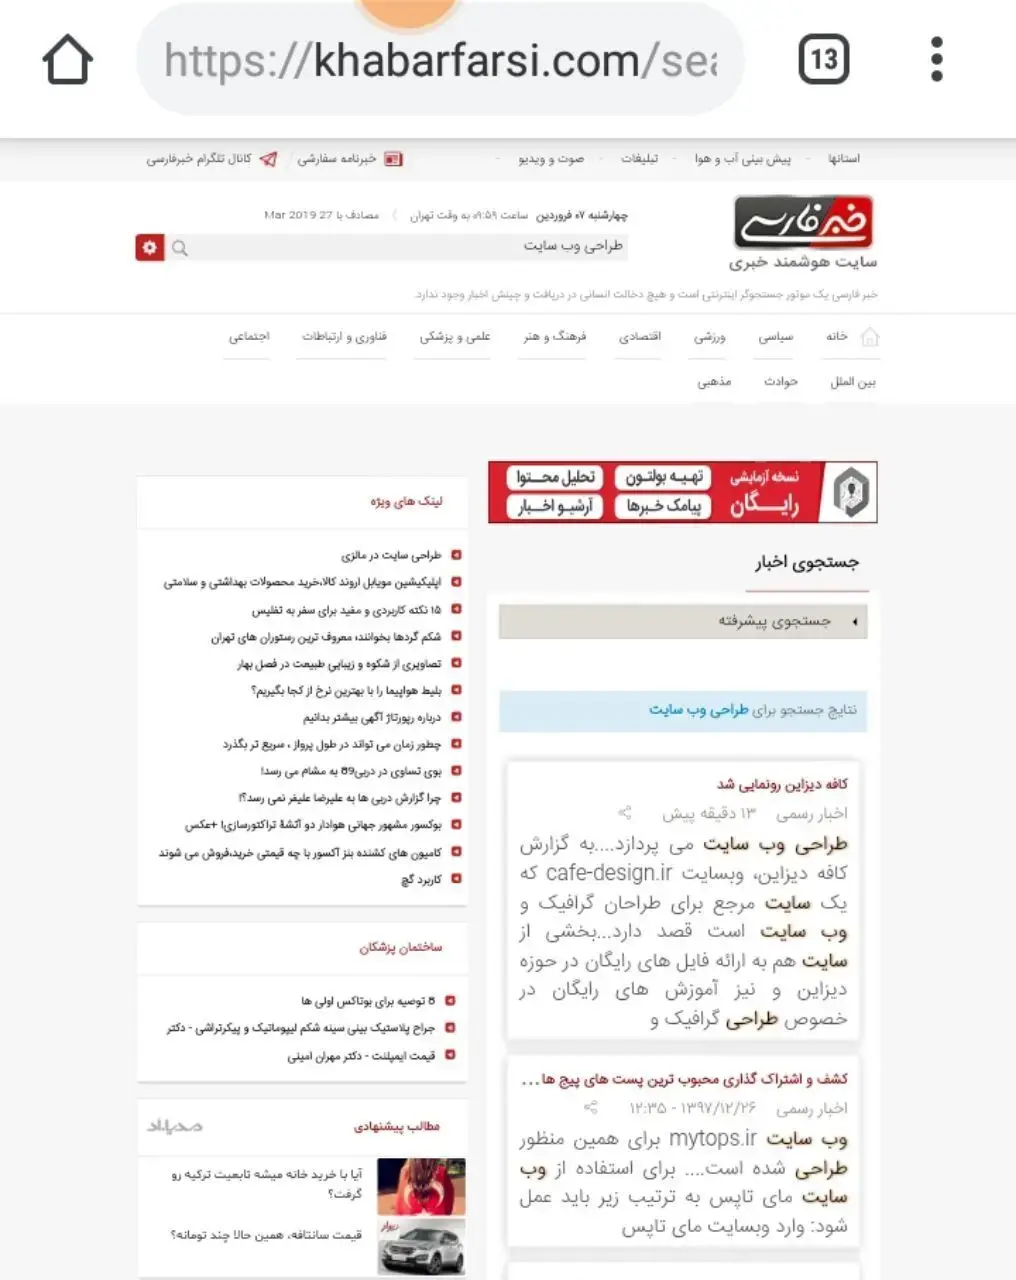 وب سایت خبر فارسی برای پیدا کردن موضوعات پر جستجو